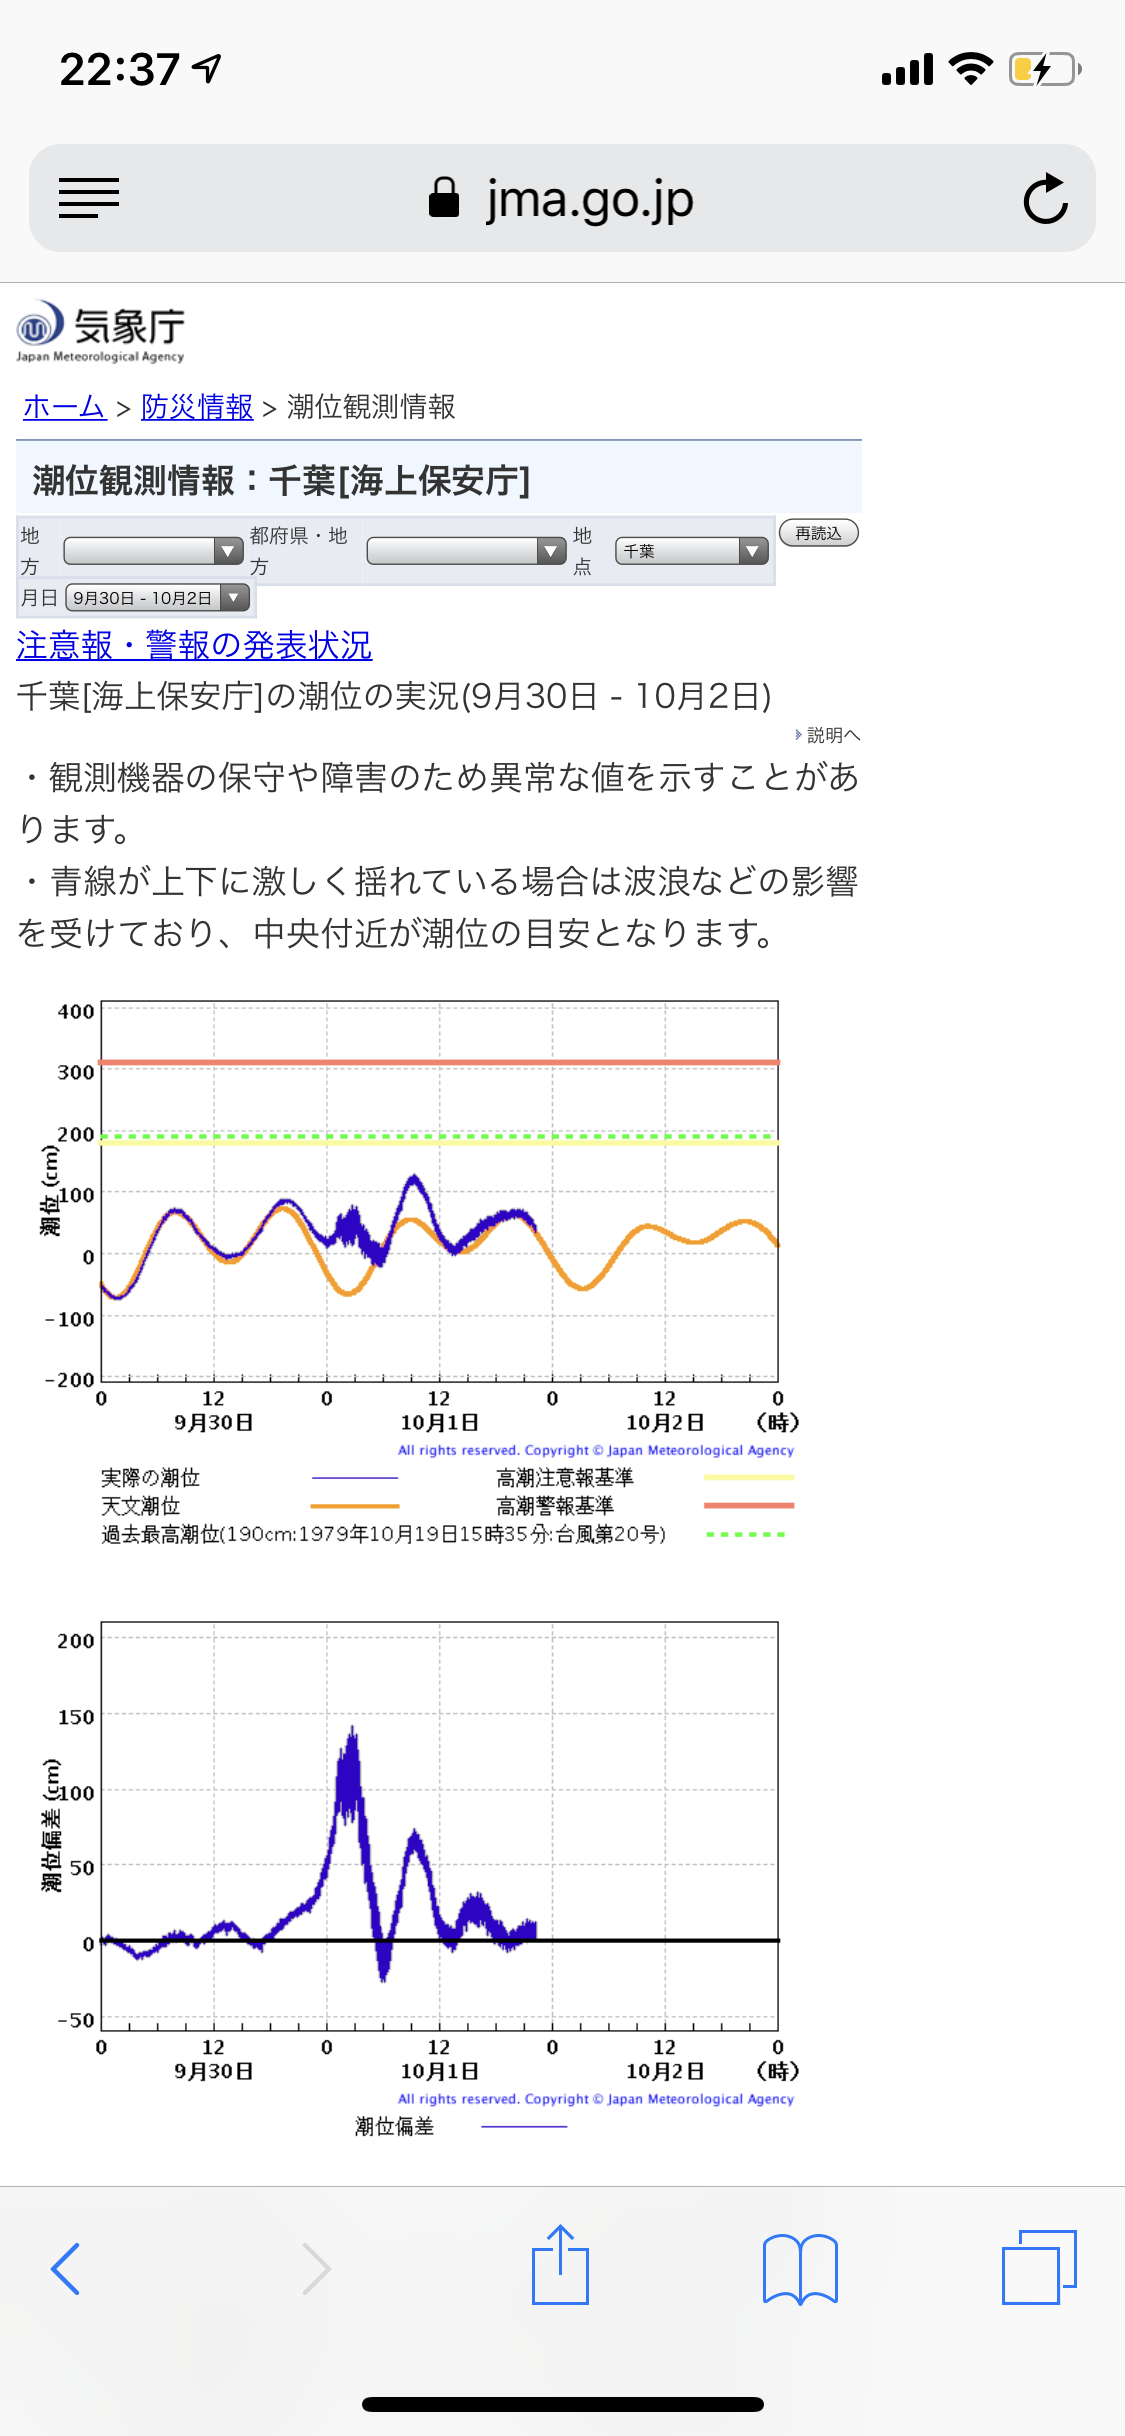 昨日の台風による東京湾の影響を調べてみま...